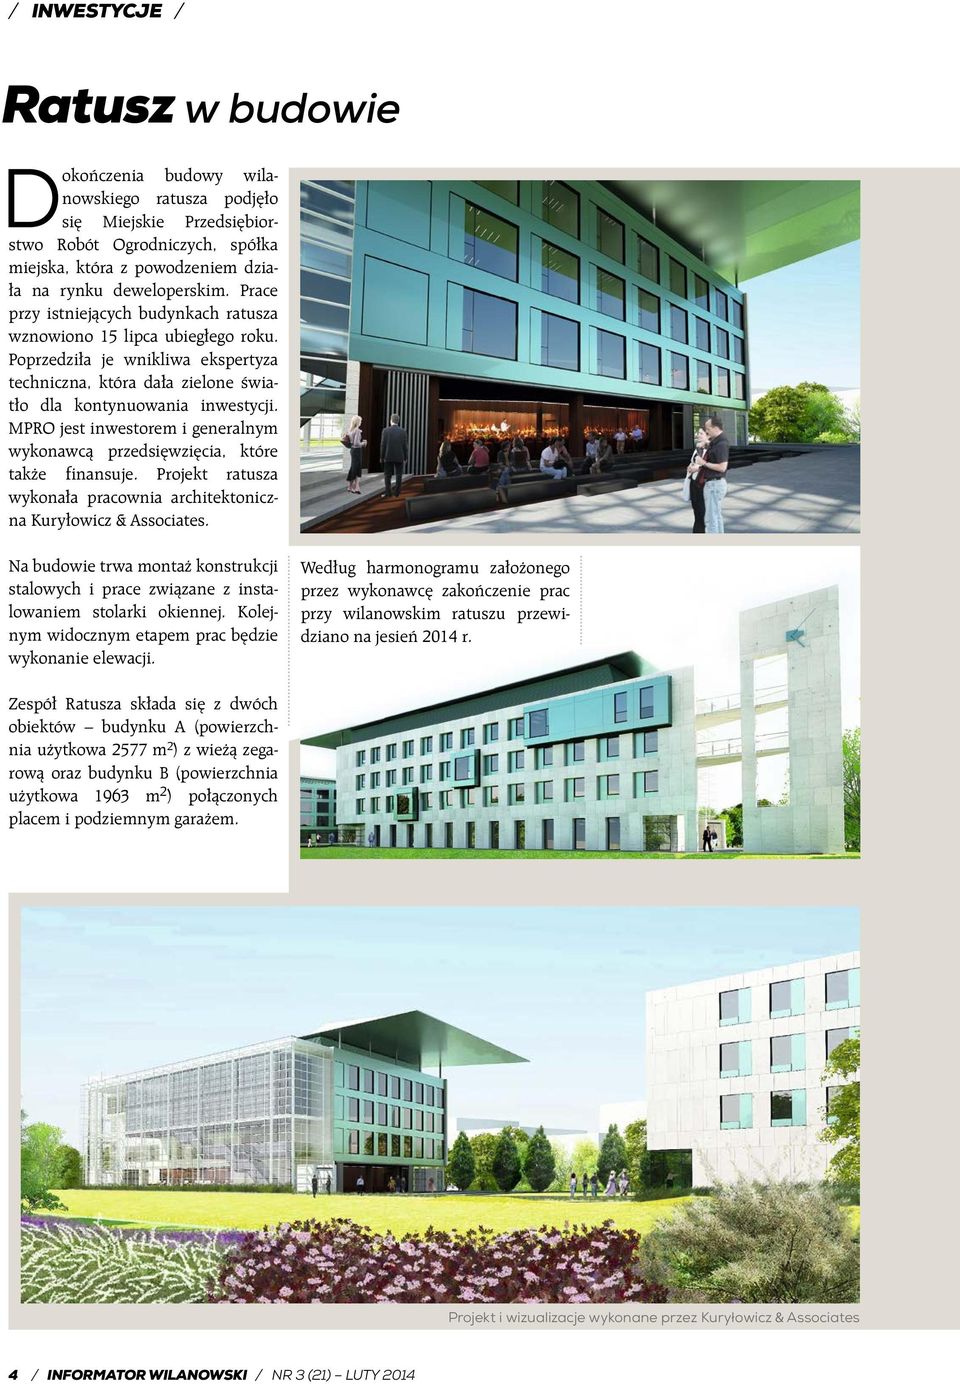 MPRO jest inwestorem i generalnym wykonawcą przedsięwzięcia, które także finansuje. Projekt ratusza wykonała pracownia architektoniczna Kuryłowicz & Associates.